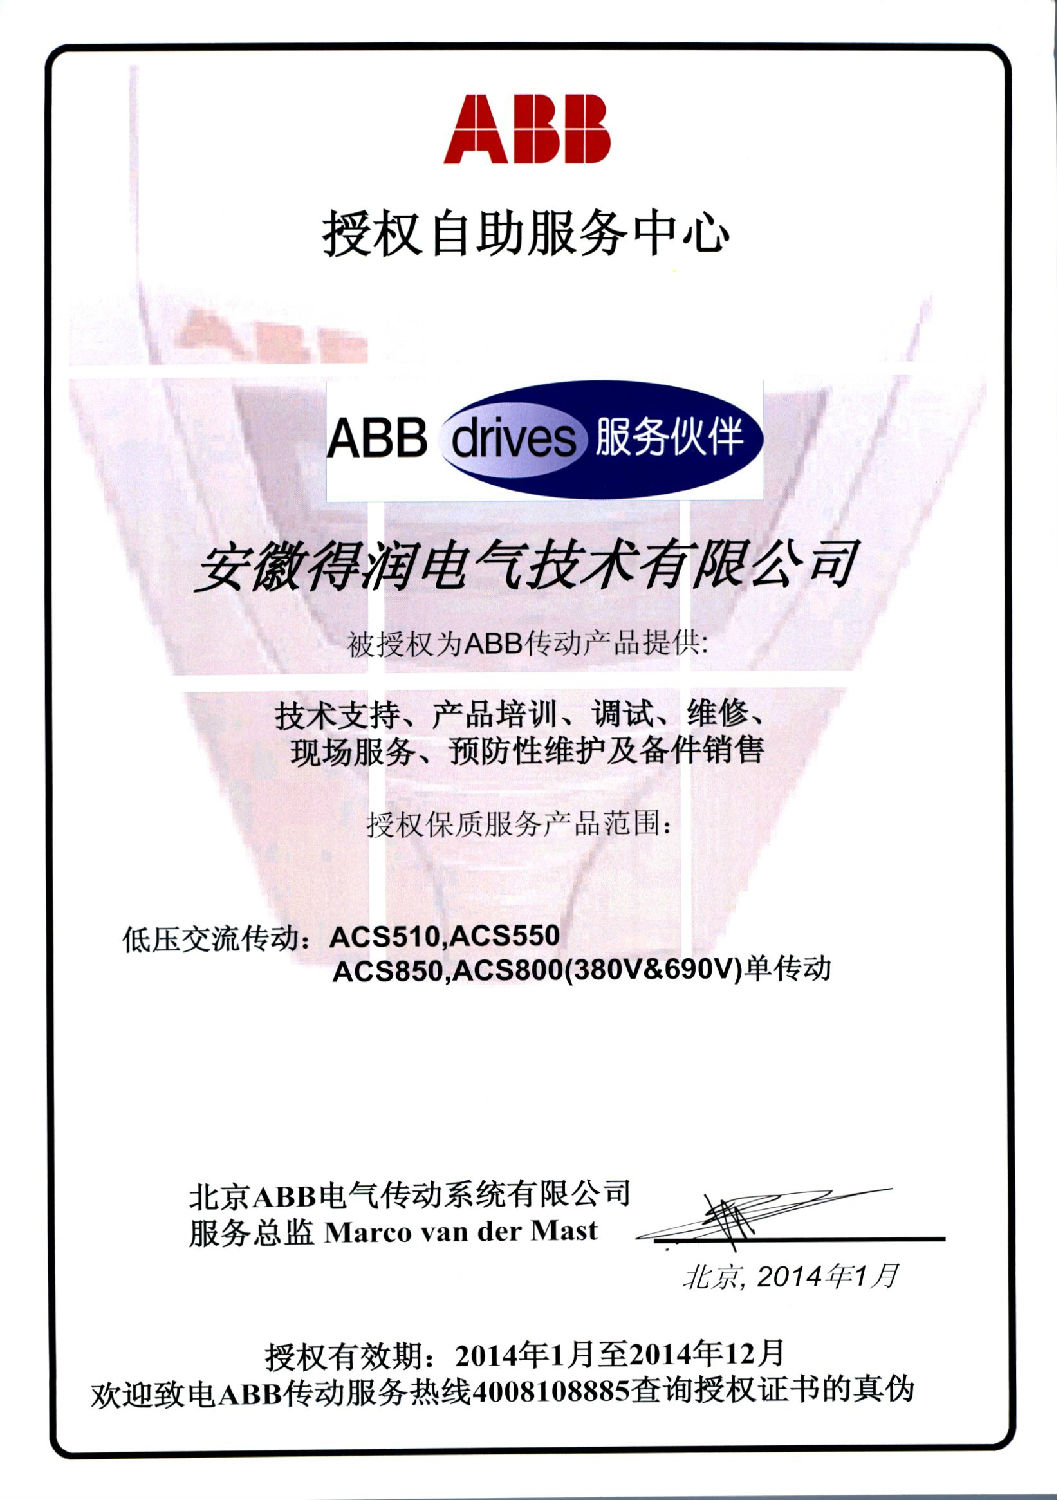 安徽得润电气技术有限公司—ABB授权自助服务中心 全国统一客服热线：400-0551-777